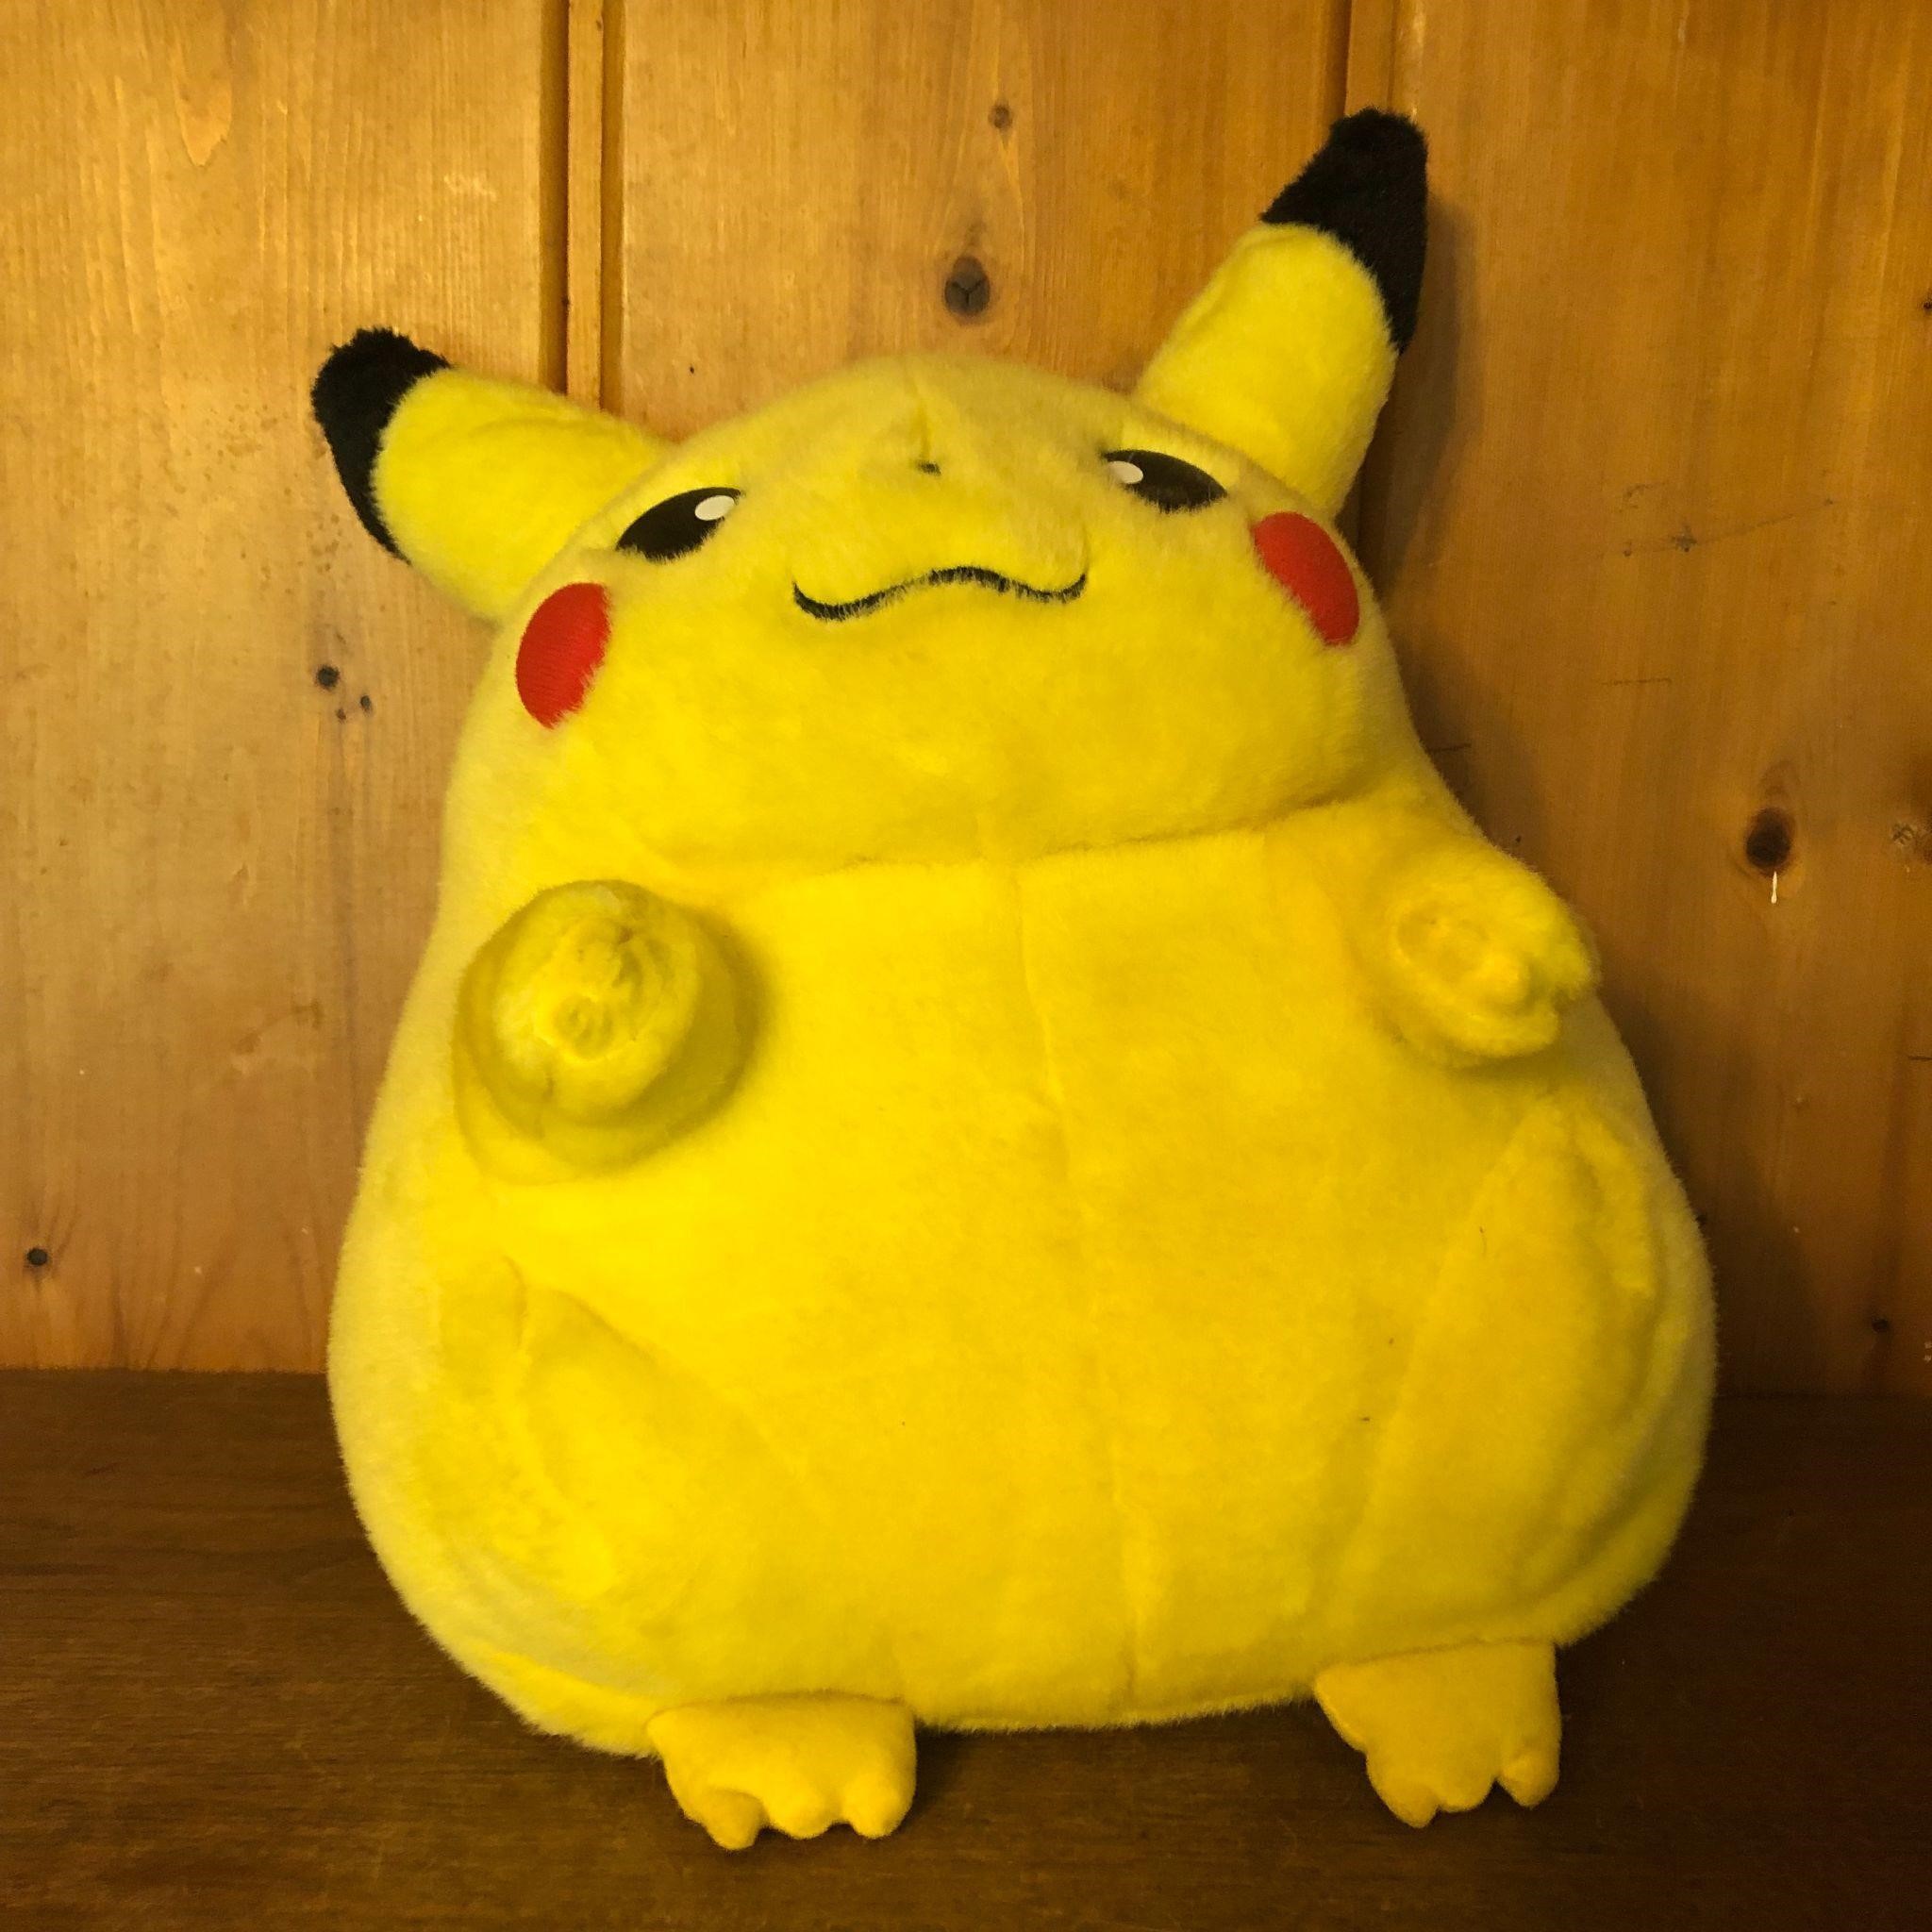 Large Pokemon Pikachu Plush Stuffed Animal